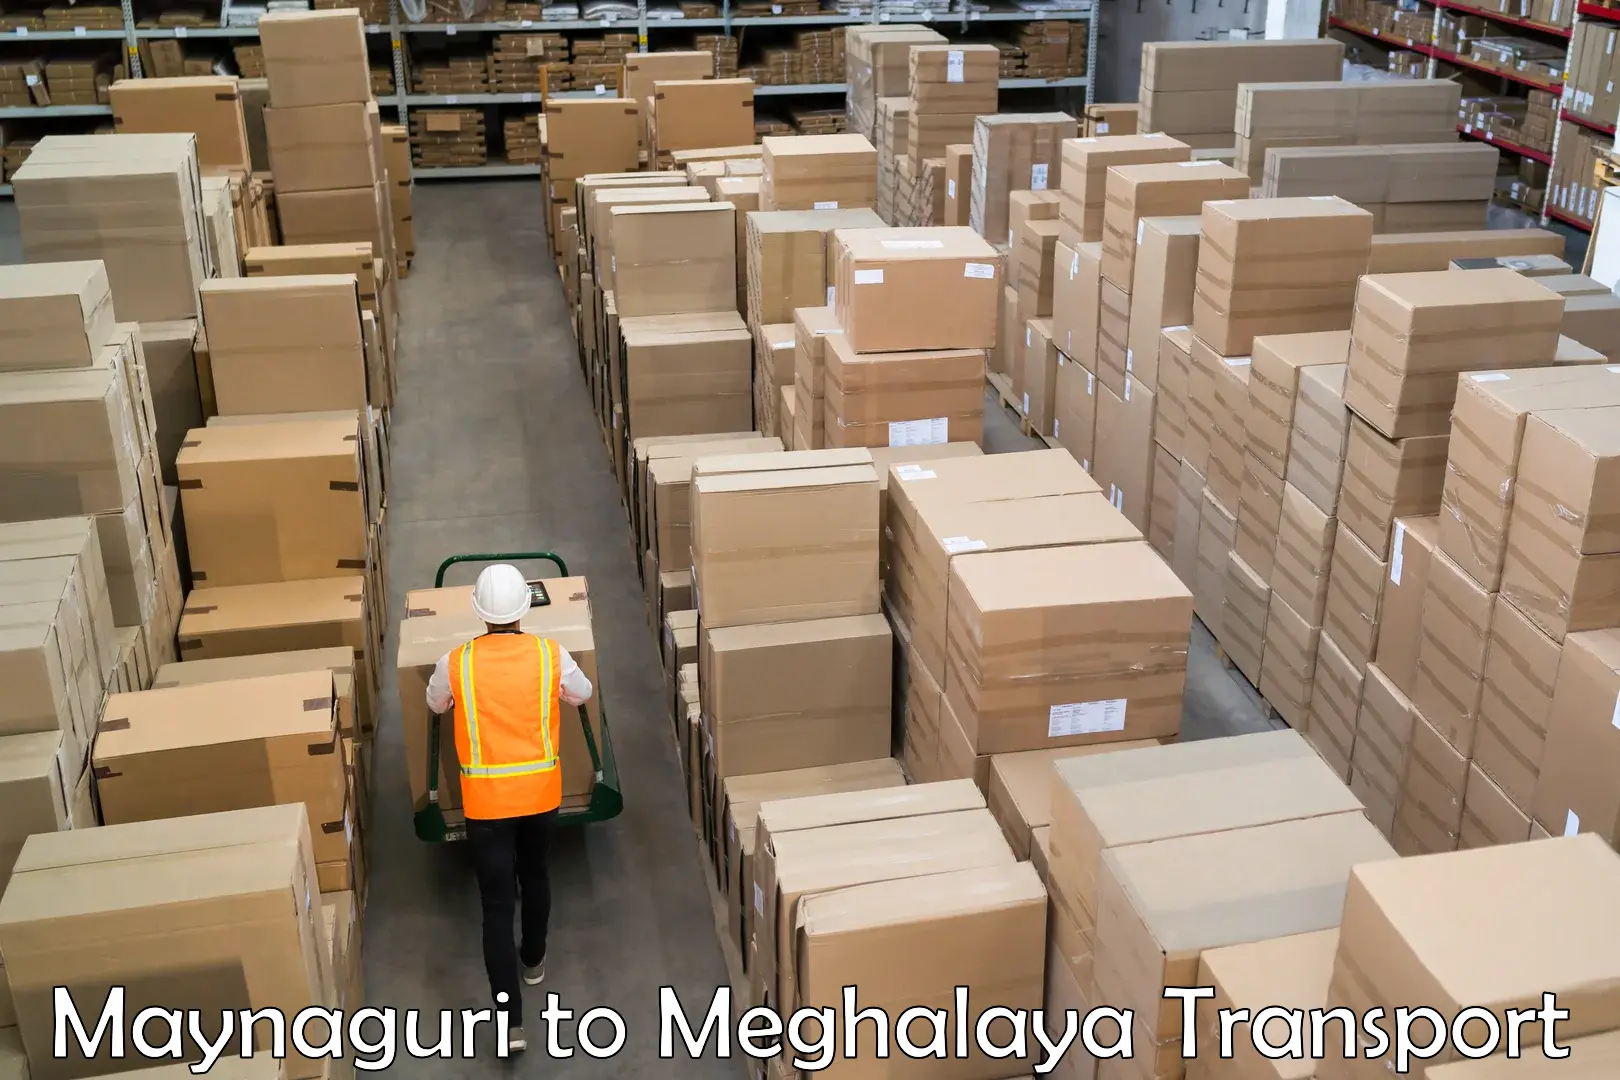 Furniture transport service Maynaguri to Garobadha